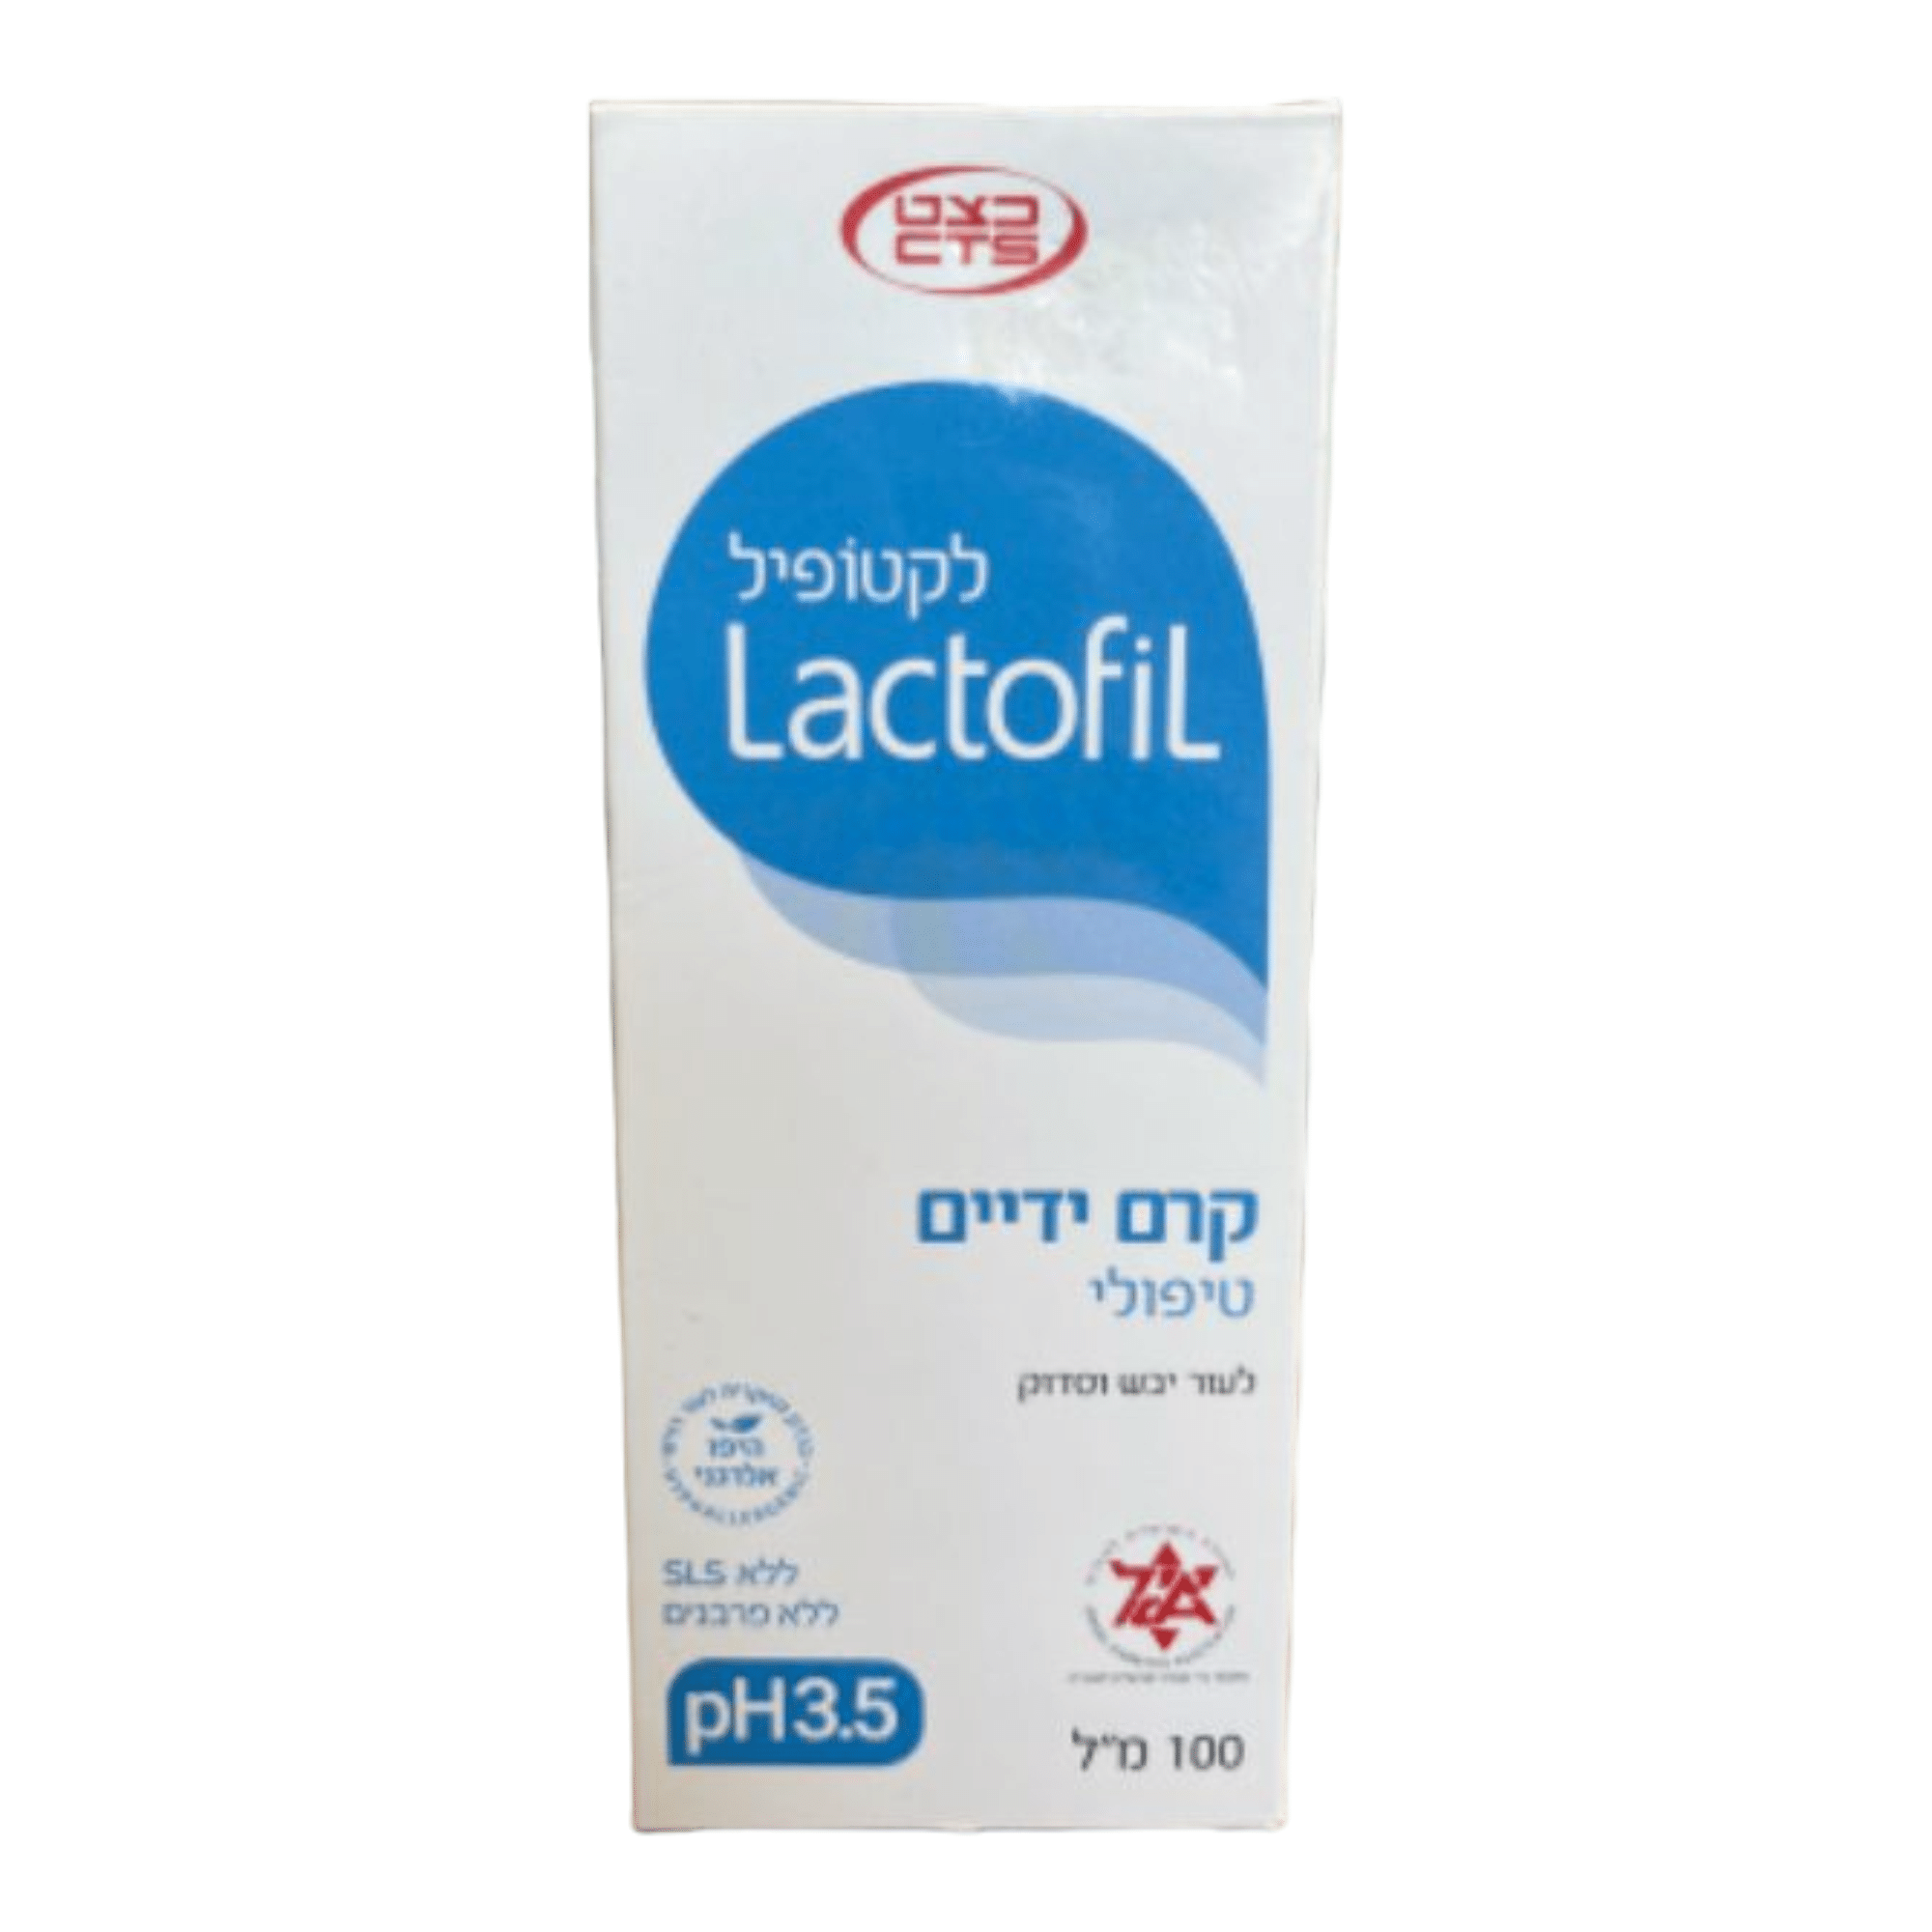 לקטופיל Lactofil קרם ידיים טיפולי לעור יבש